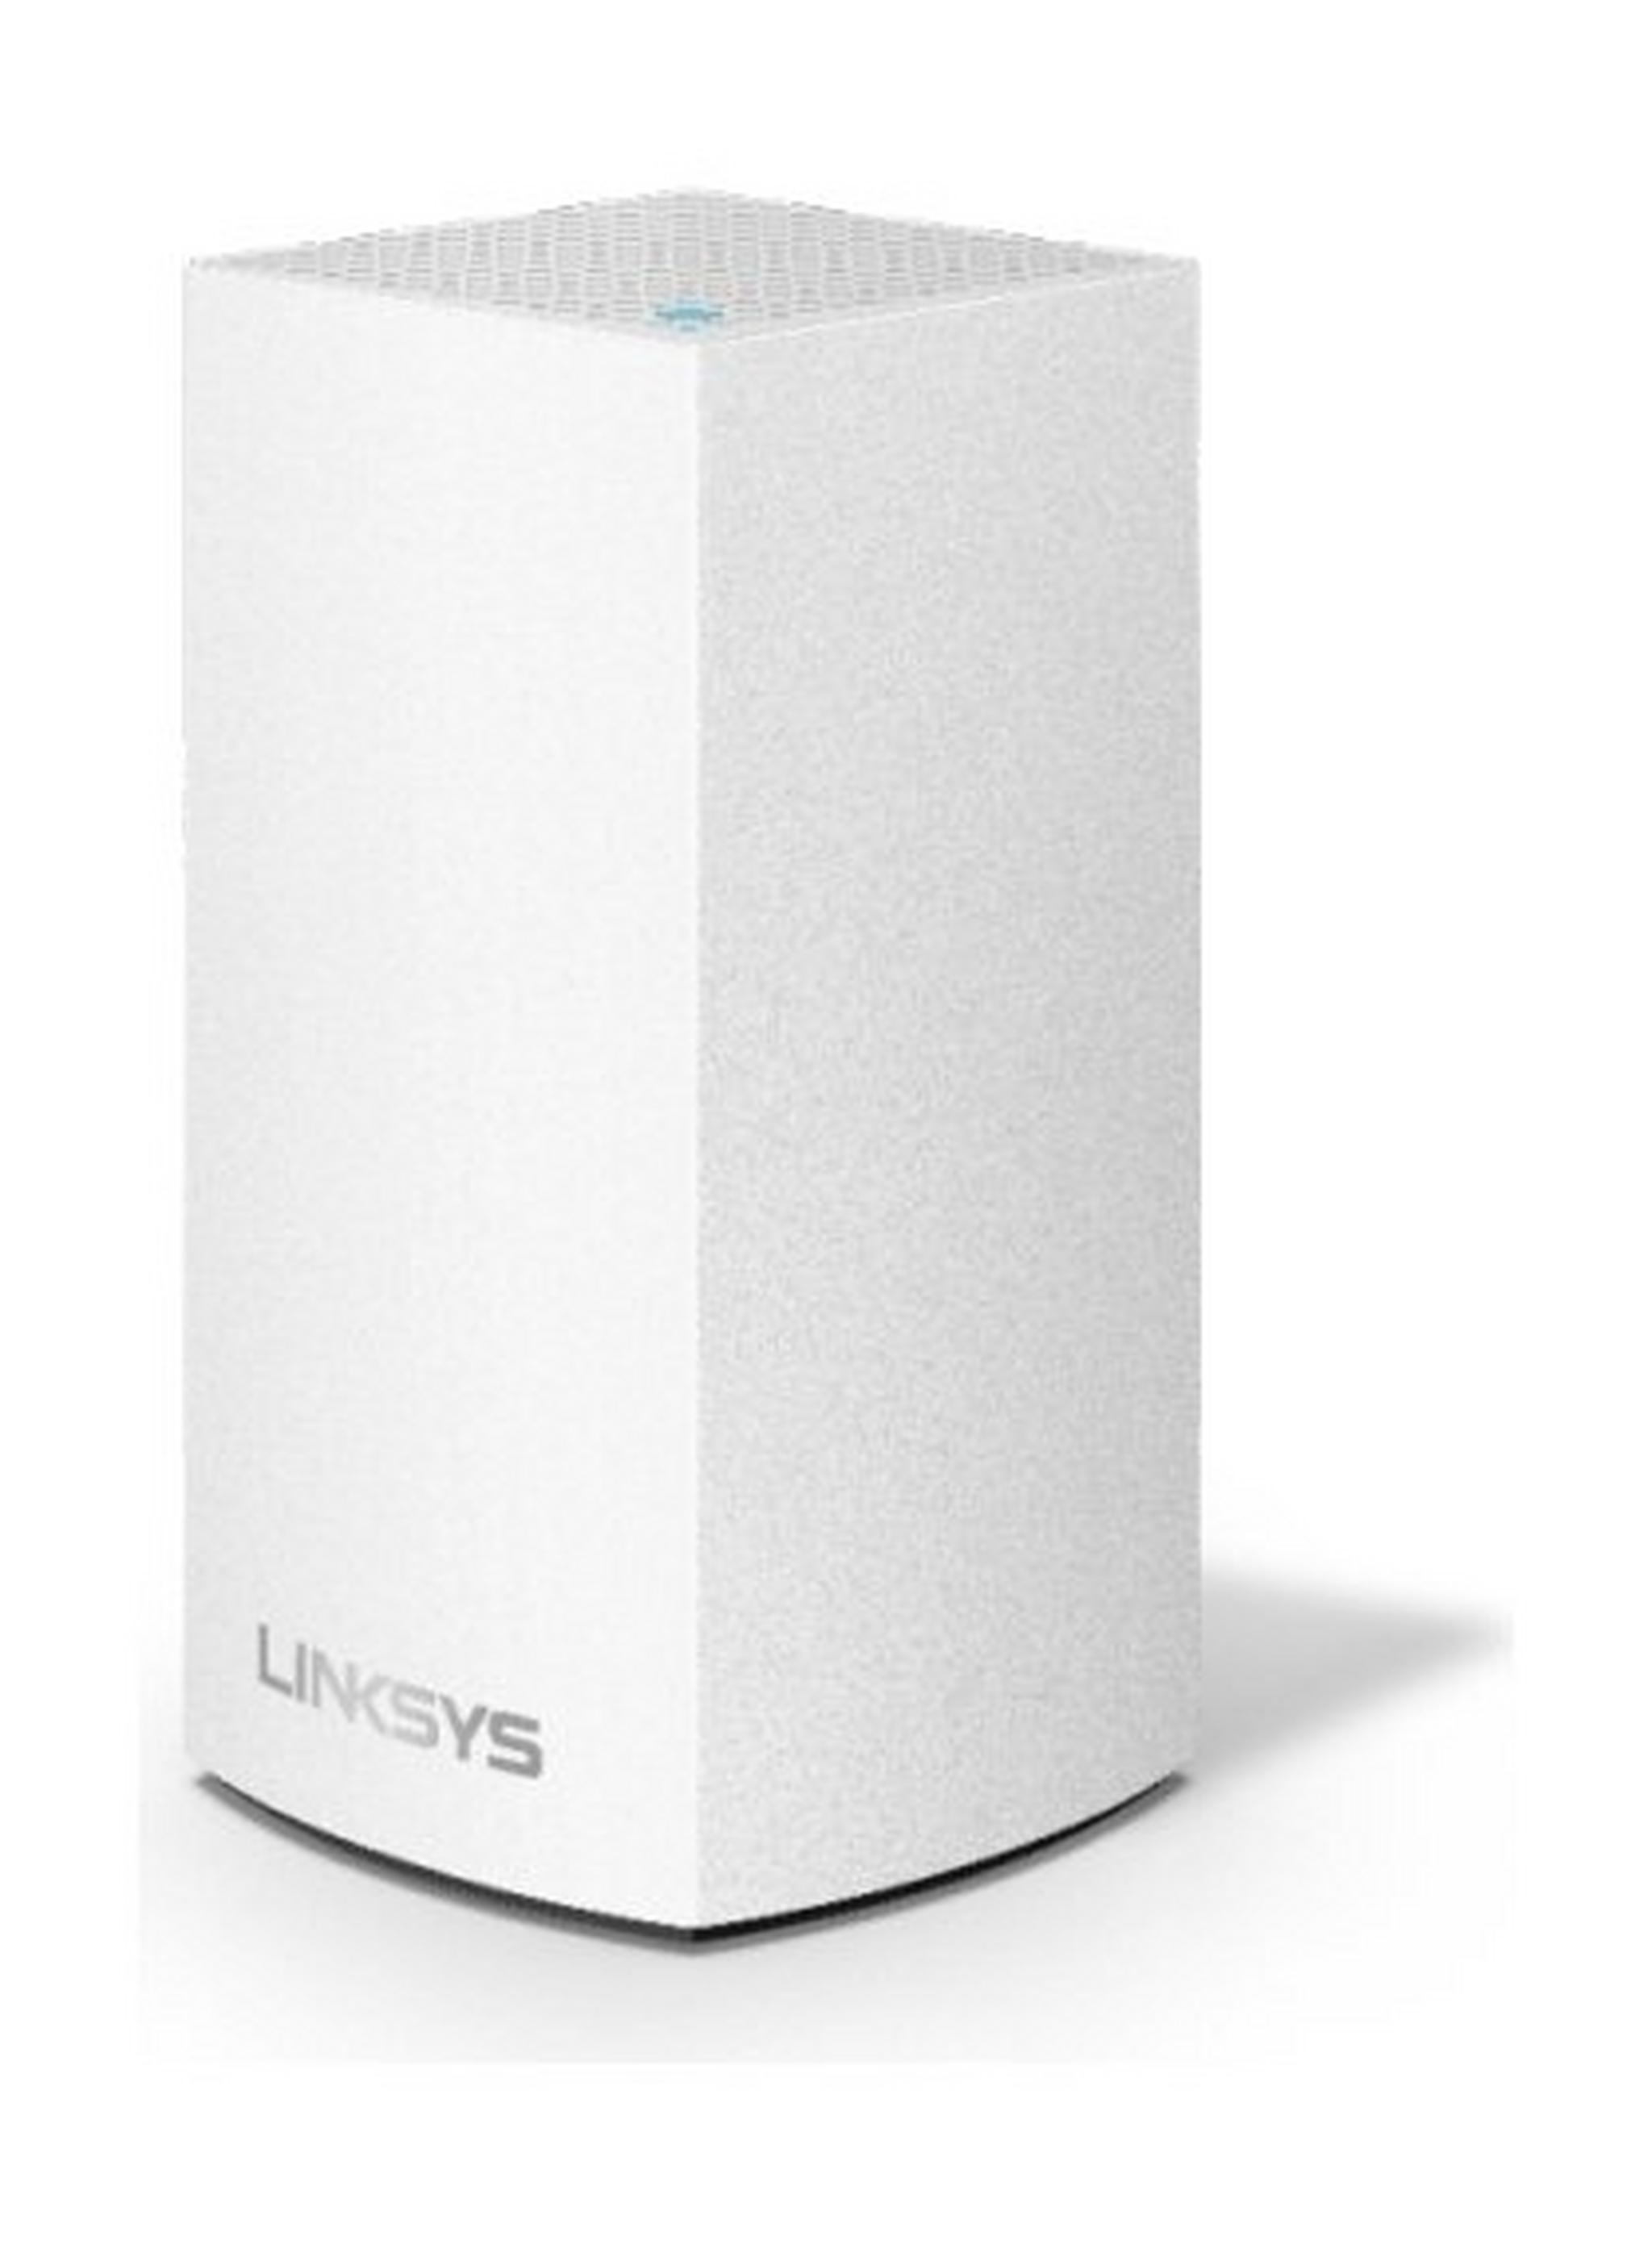 نظام شبكة واي فاي ذكي من لينكسيس فيلوب ايه سي ١٣٠٠ (جهاز واحد) - أبيض